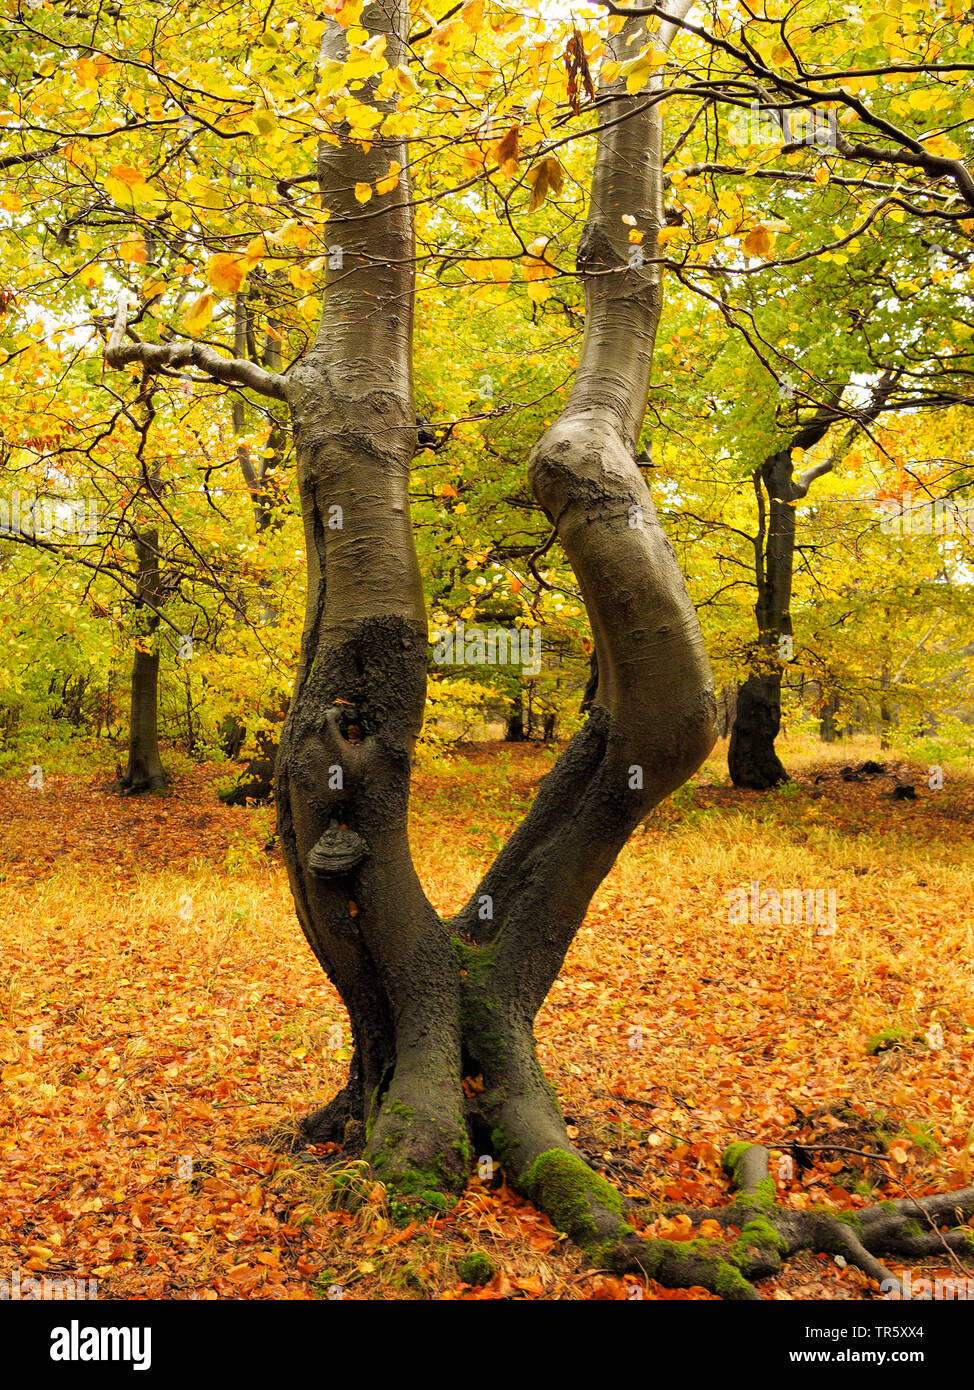 Le hêtre commun (Fagus sylvatica), vieille forêt de hêtres en automne, Bournak, République tchèque, montagnes, zones extractives Bournak, Mikulov Banque D'Images